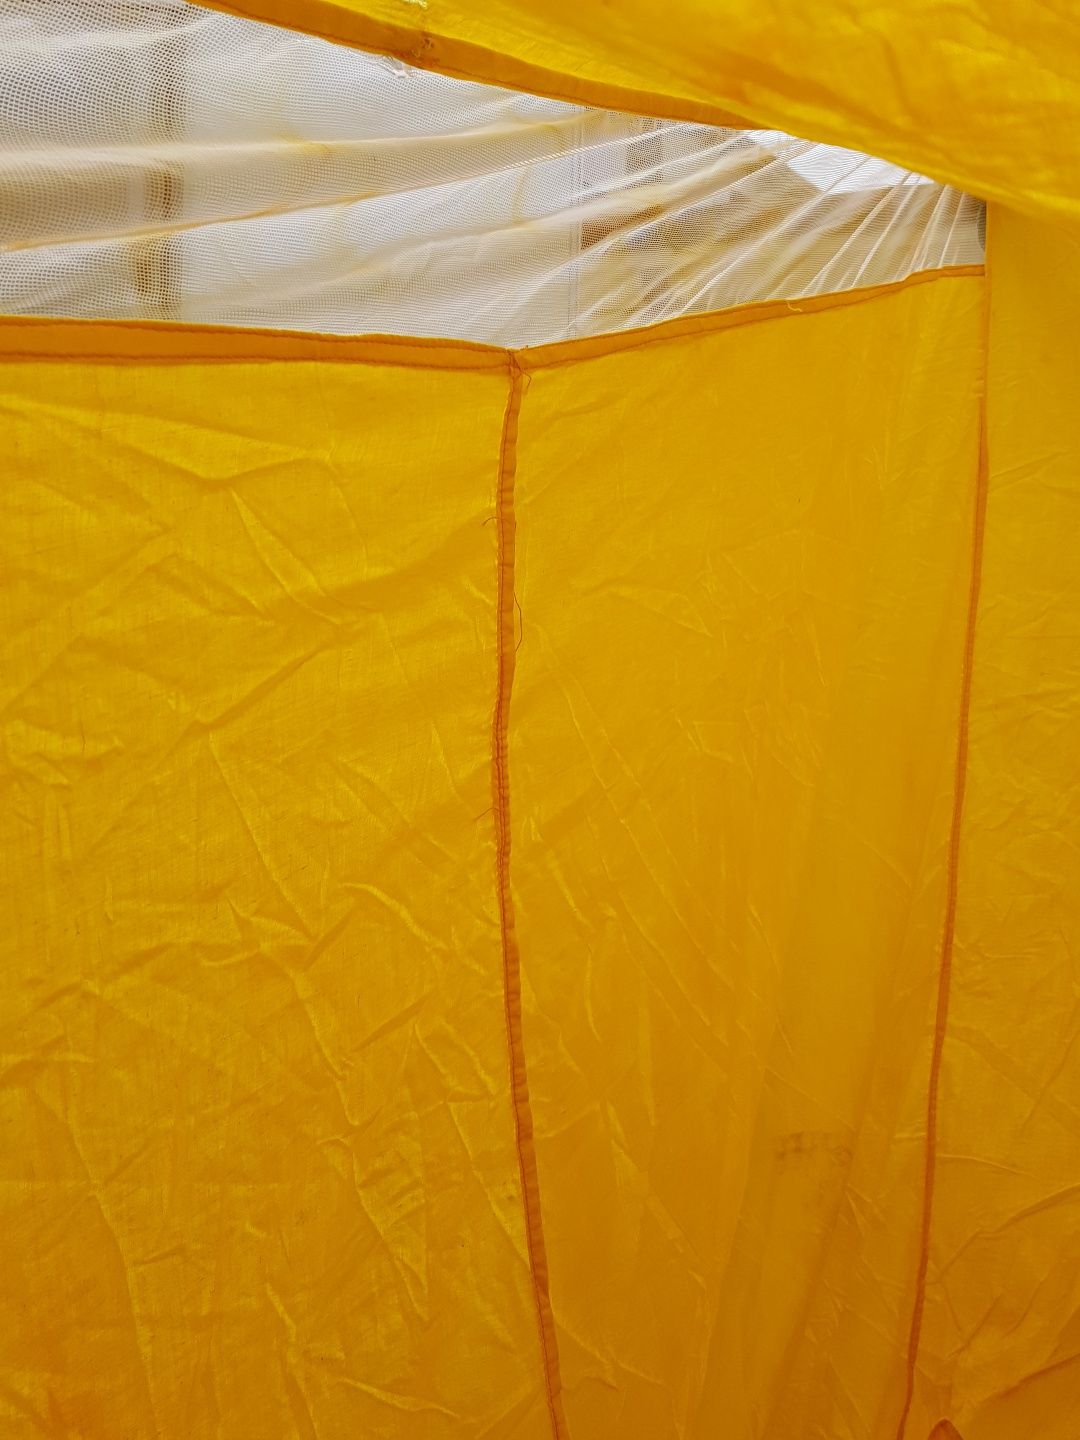 Sypialnia do namiotu używana 2metry×2metry wys. 160cm